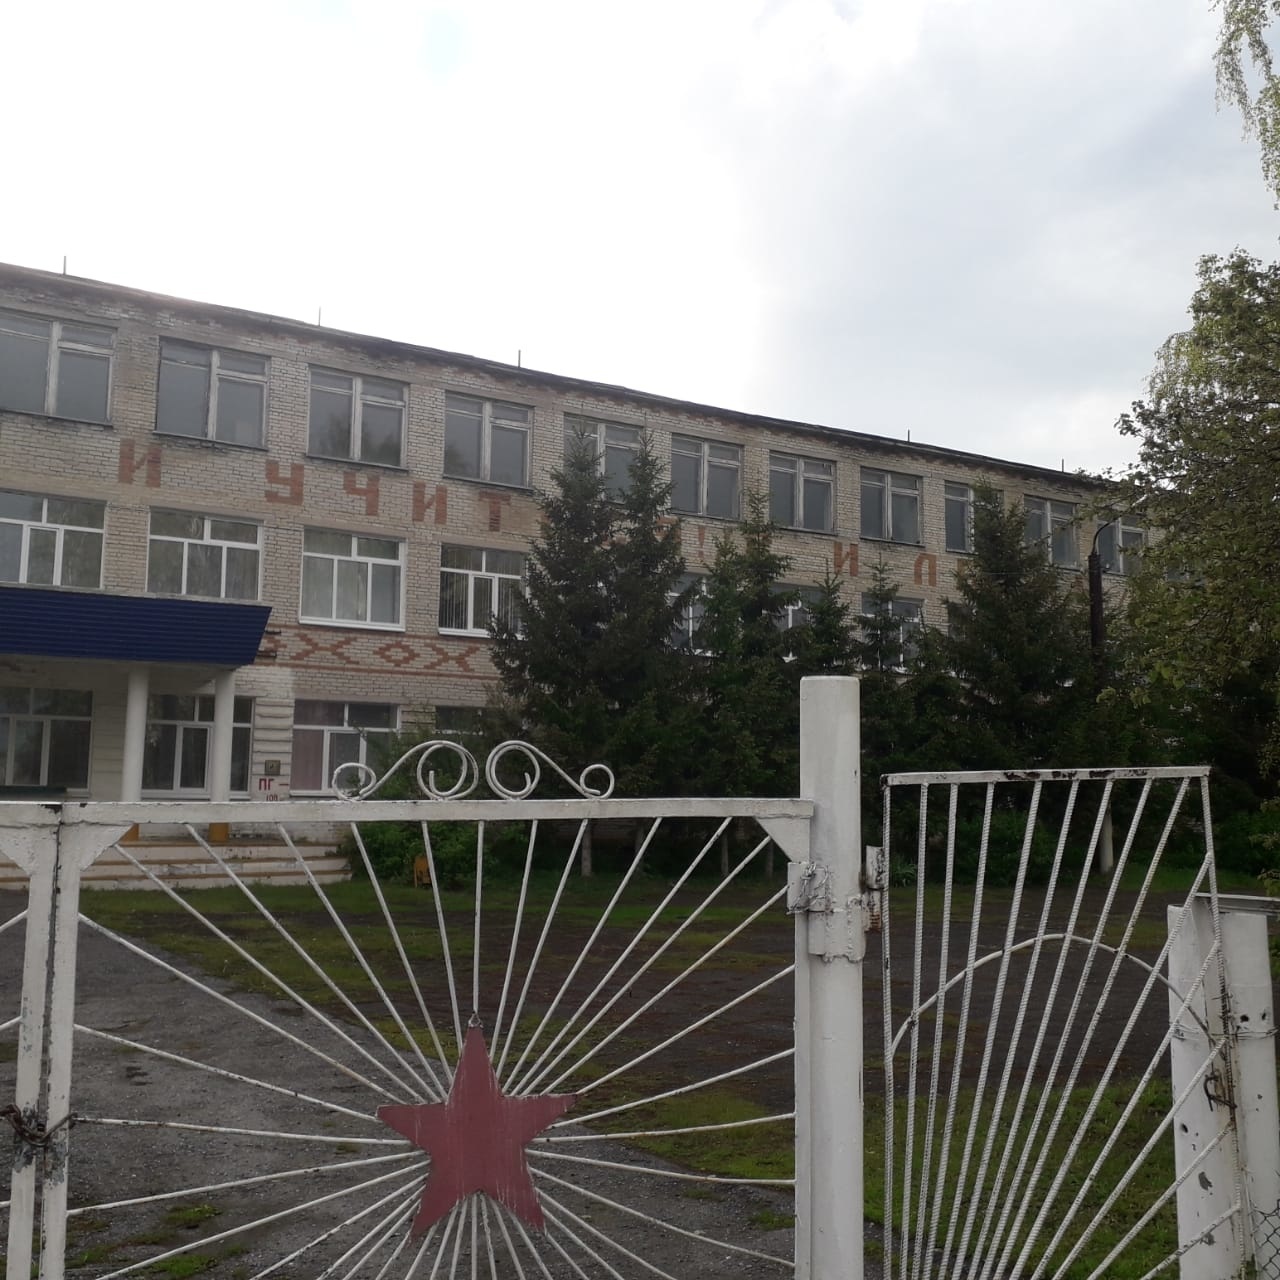 12 школа ульяновск